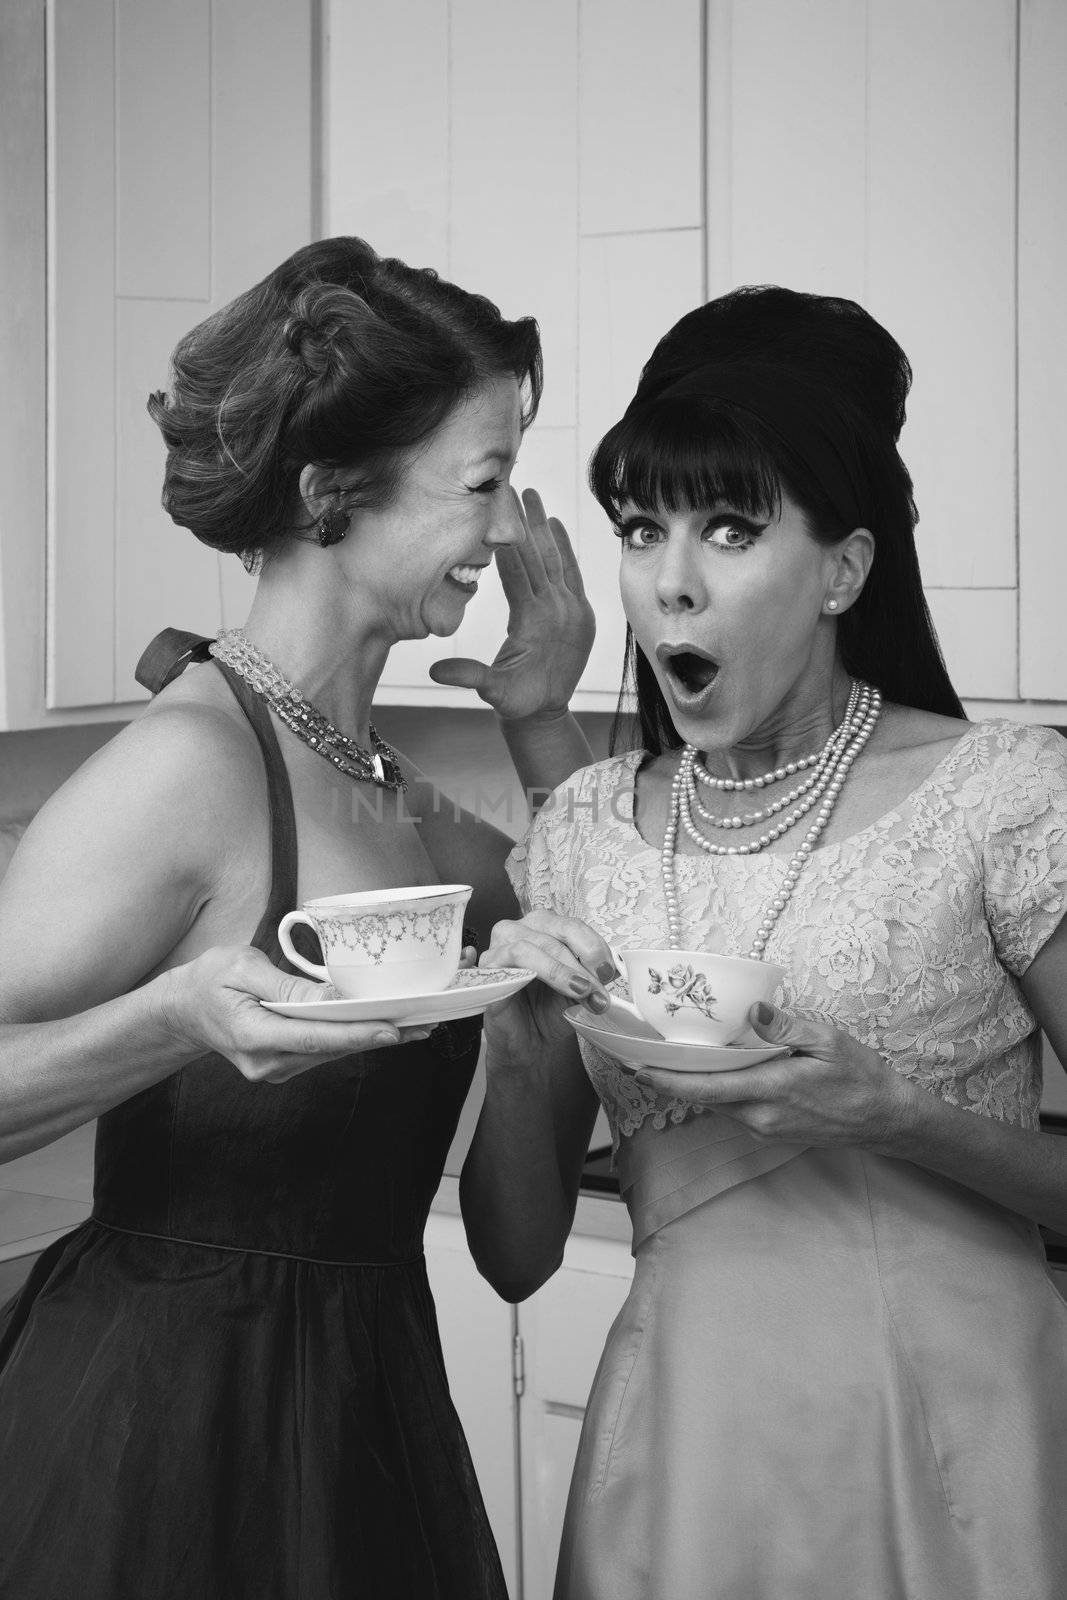 Pretty retro Caucasian women gossiping over coffee in kitchen